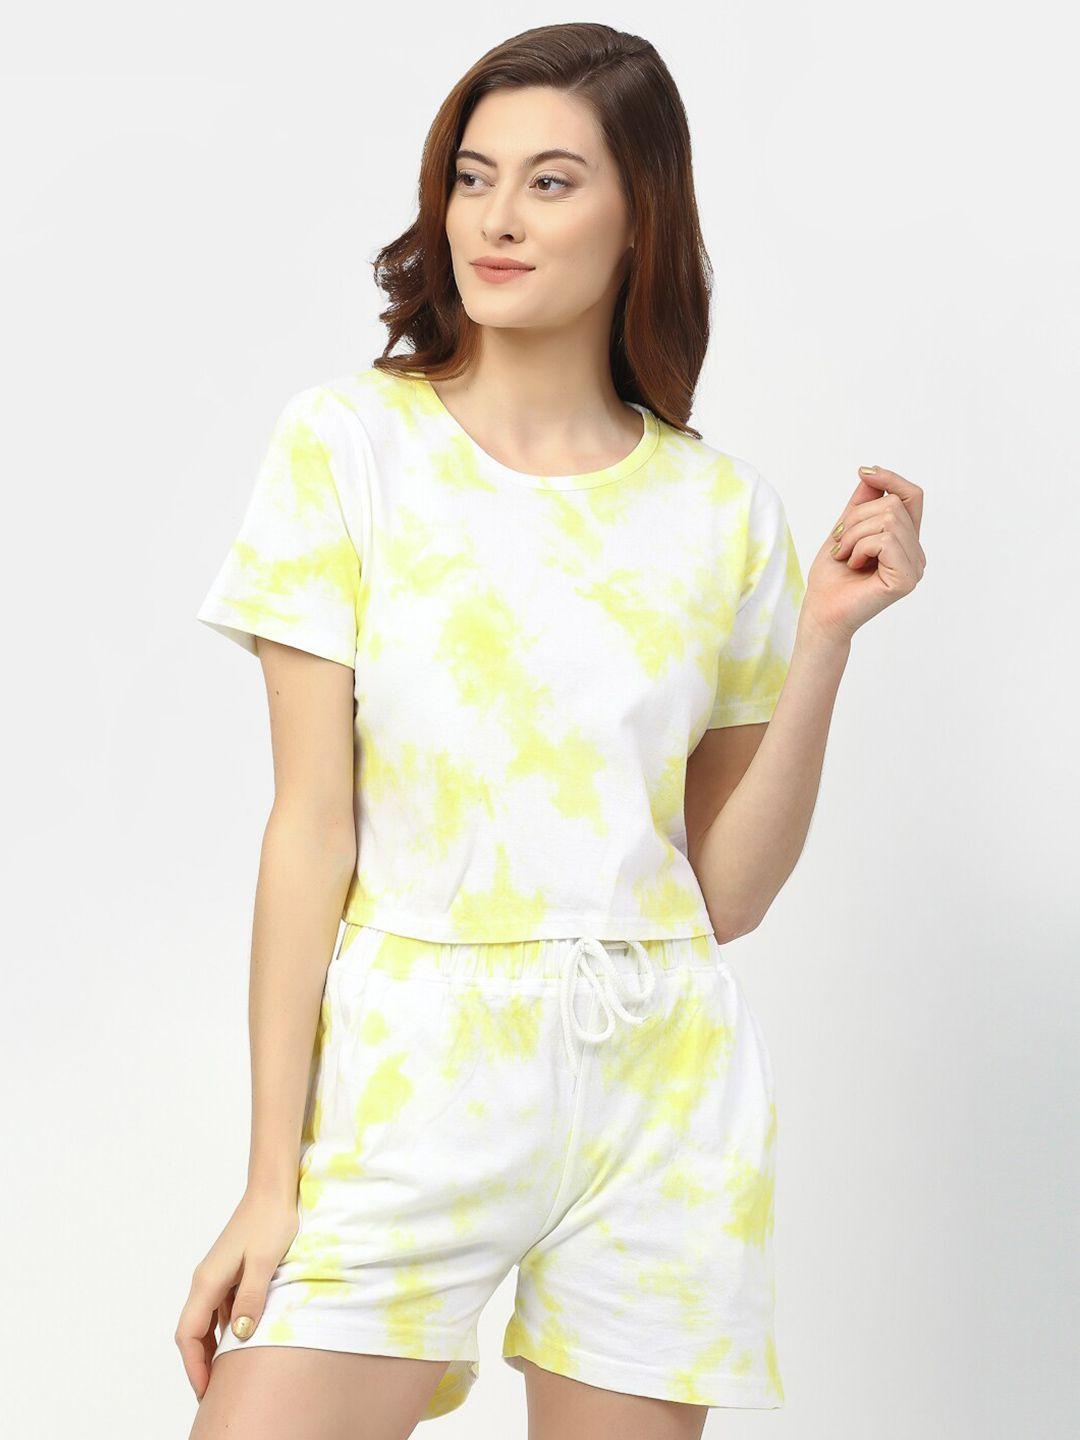 rigo women white & yellow dyed cotton top with shorts